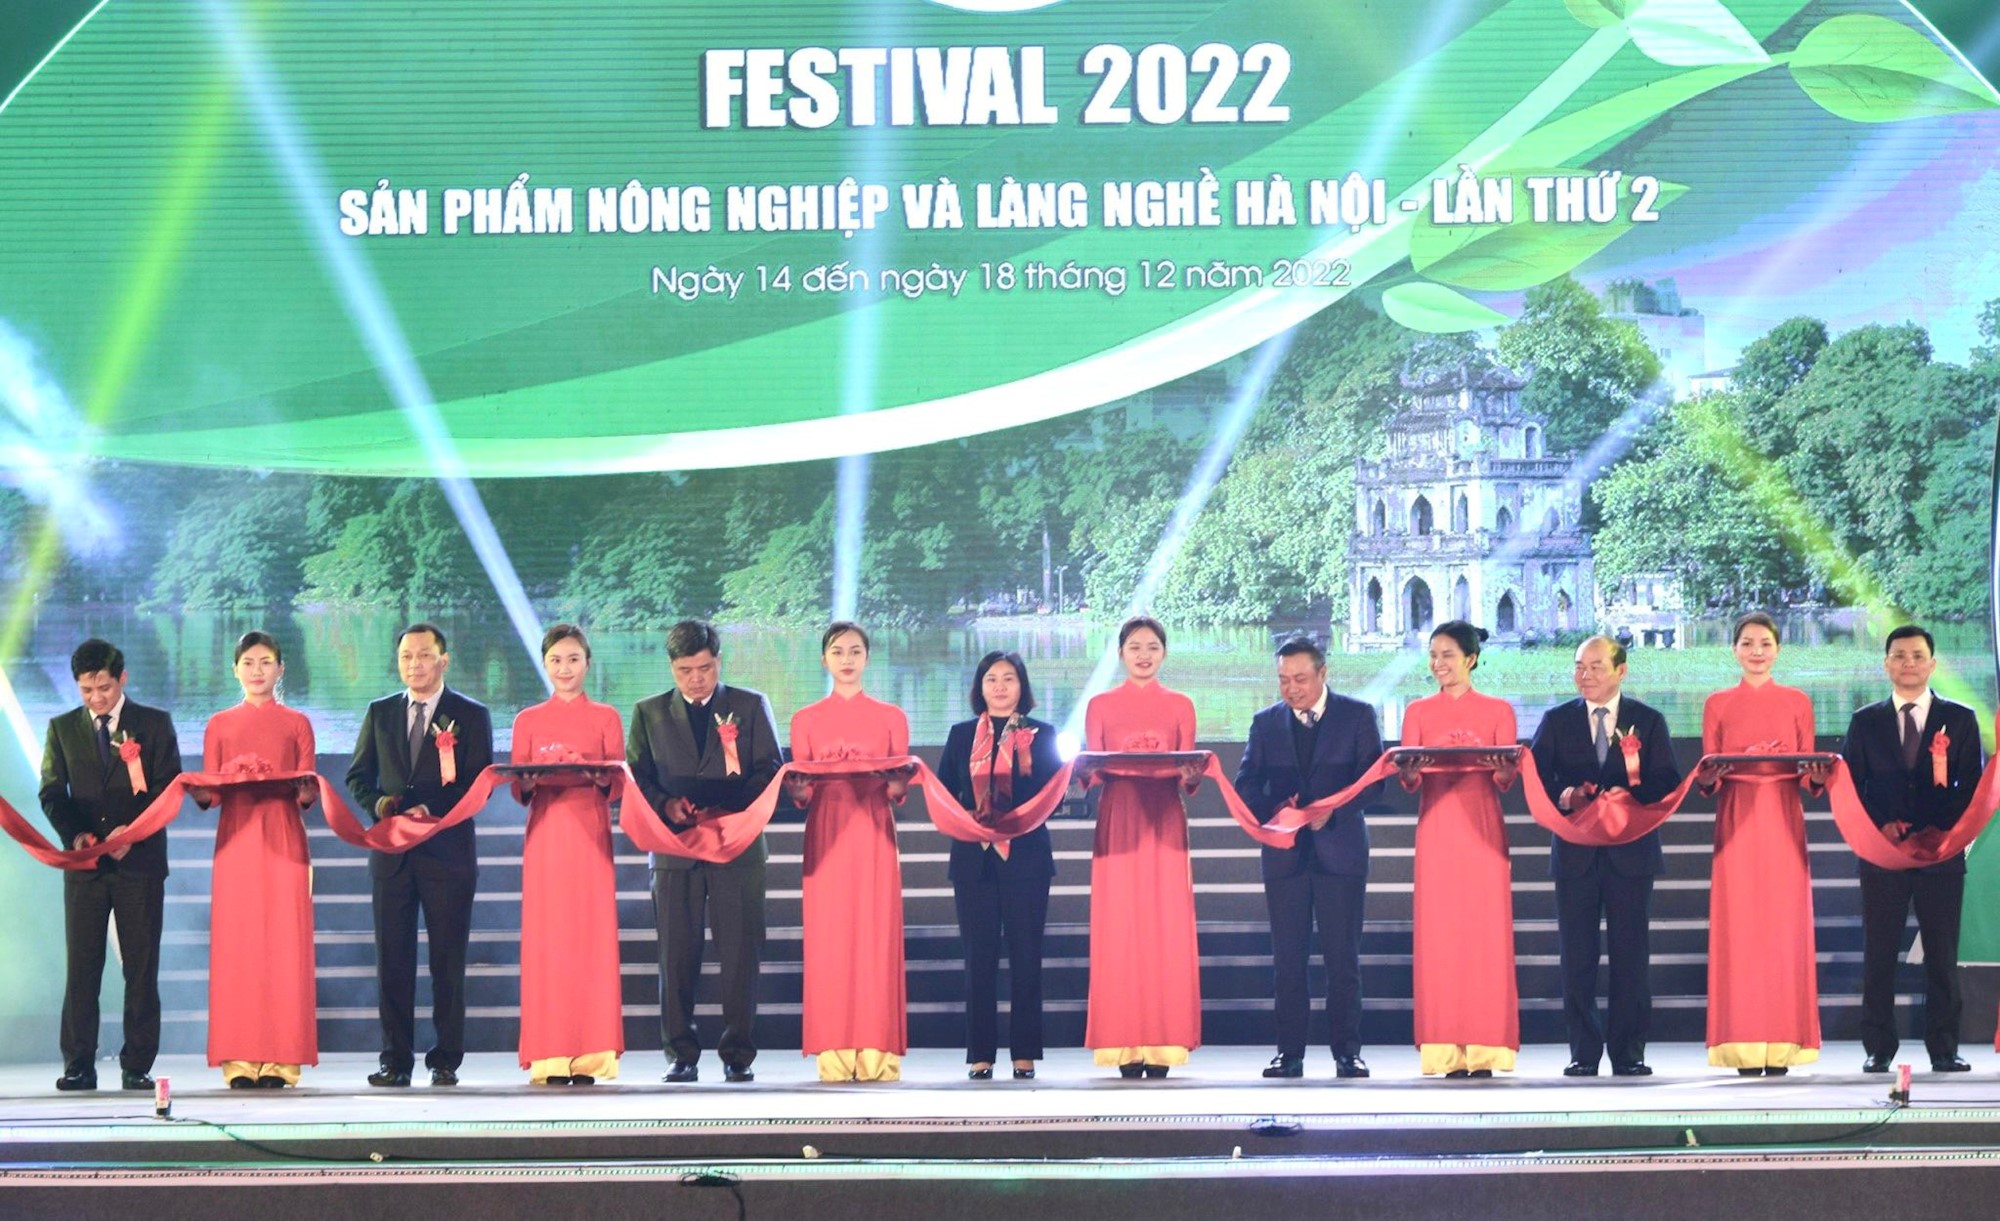 Tưng bừng lễ khai mạc Festival sản phẩm nông nghiệp và làng nghề Hà Nội 2022